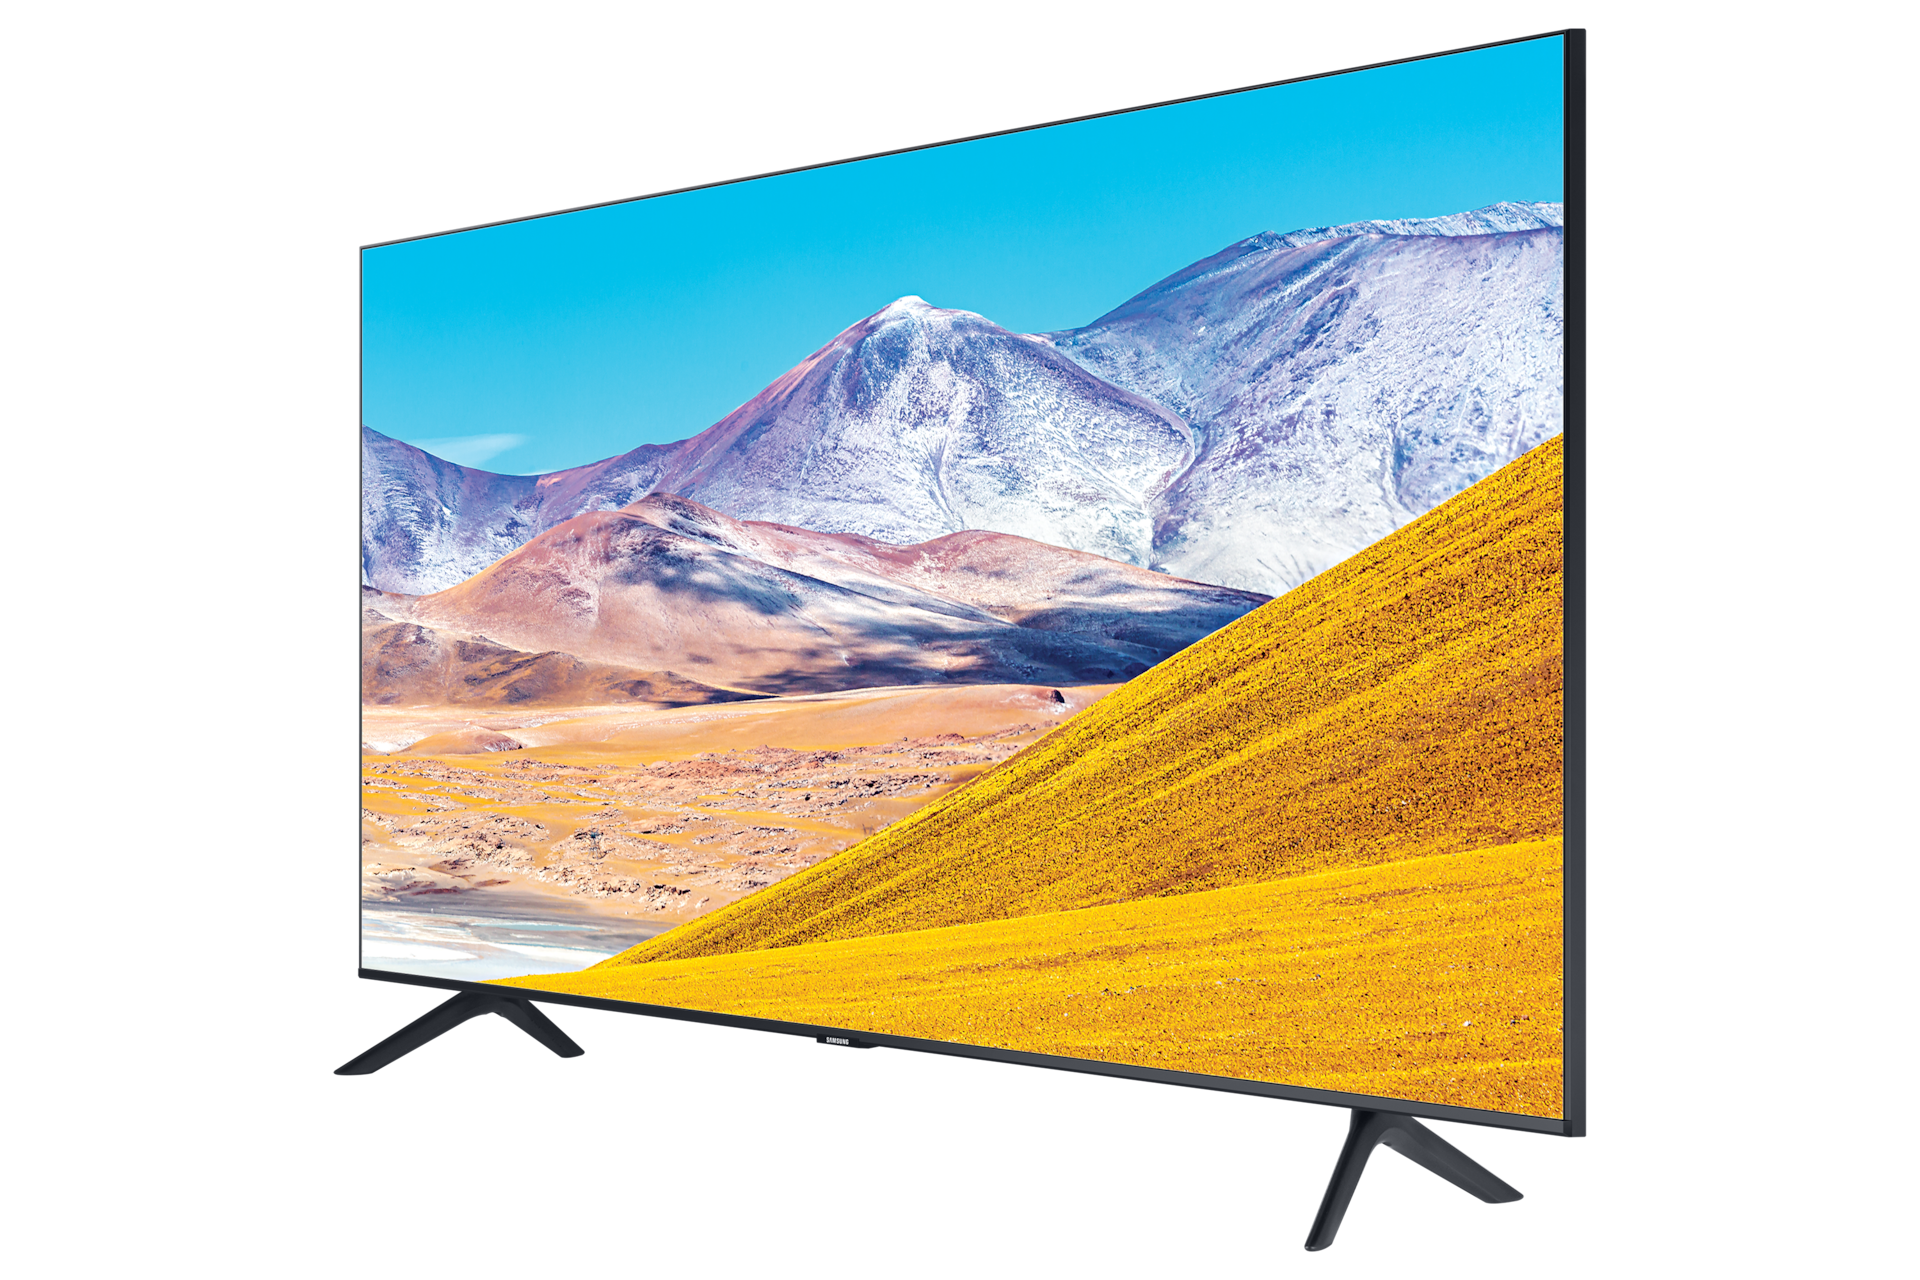 17+ Samsung 50 inch smart tv 4k weight information